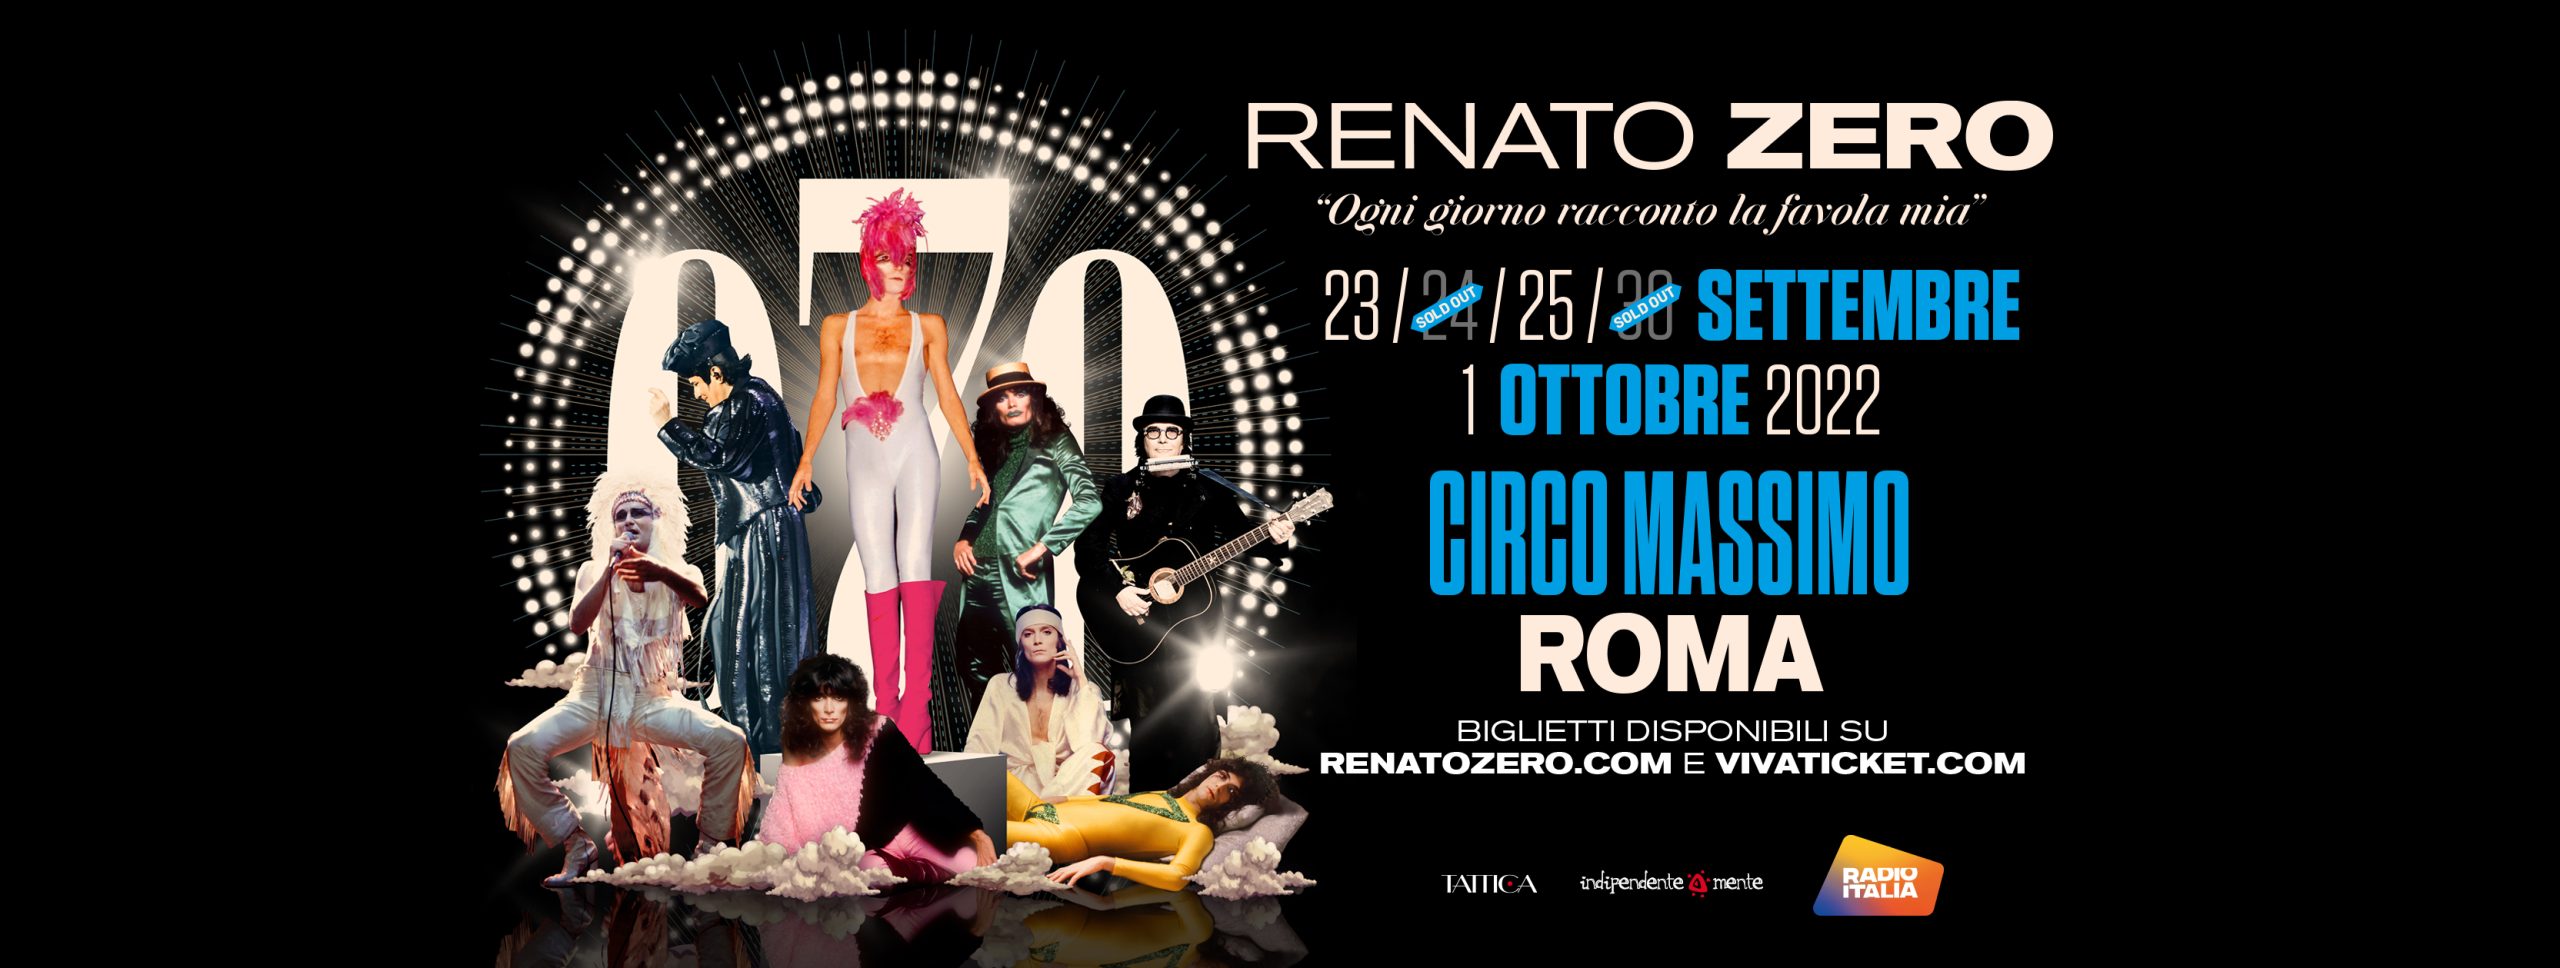 Renato Zero Roma Tour Circo Massimo